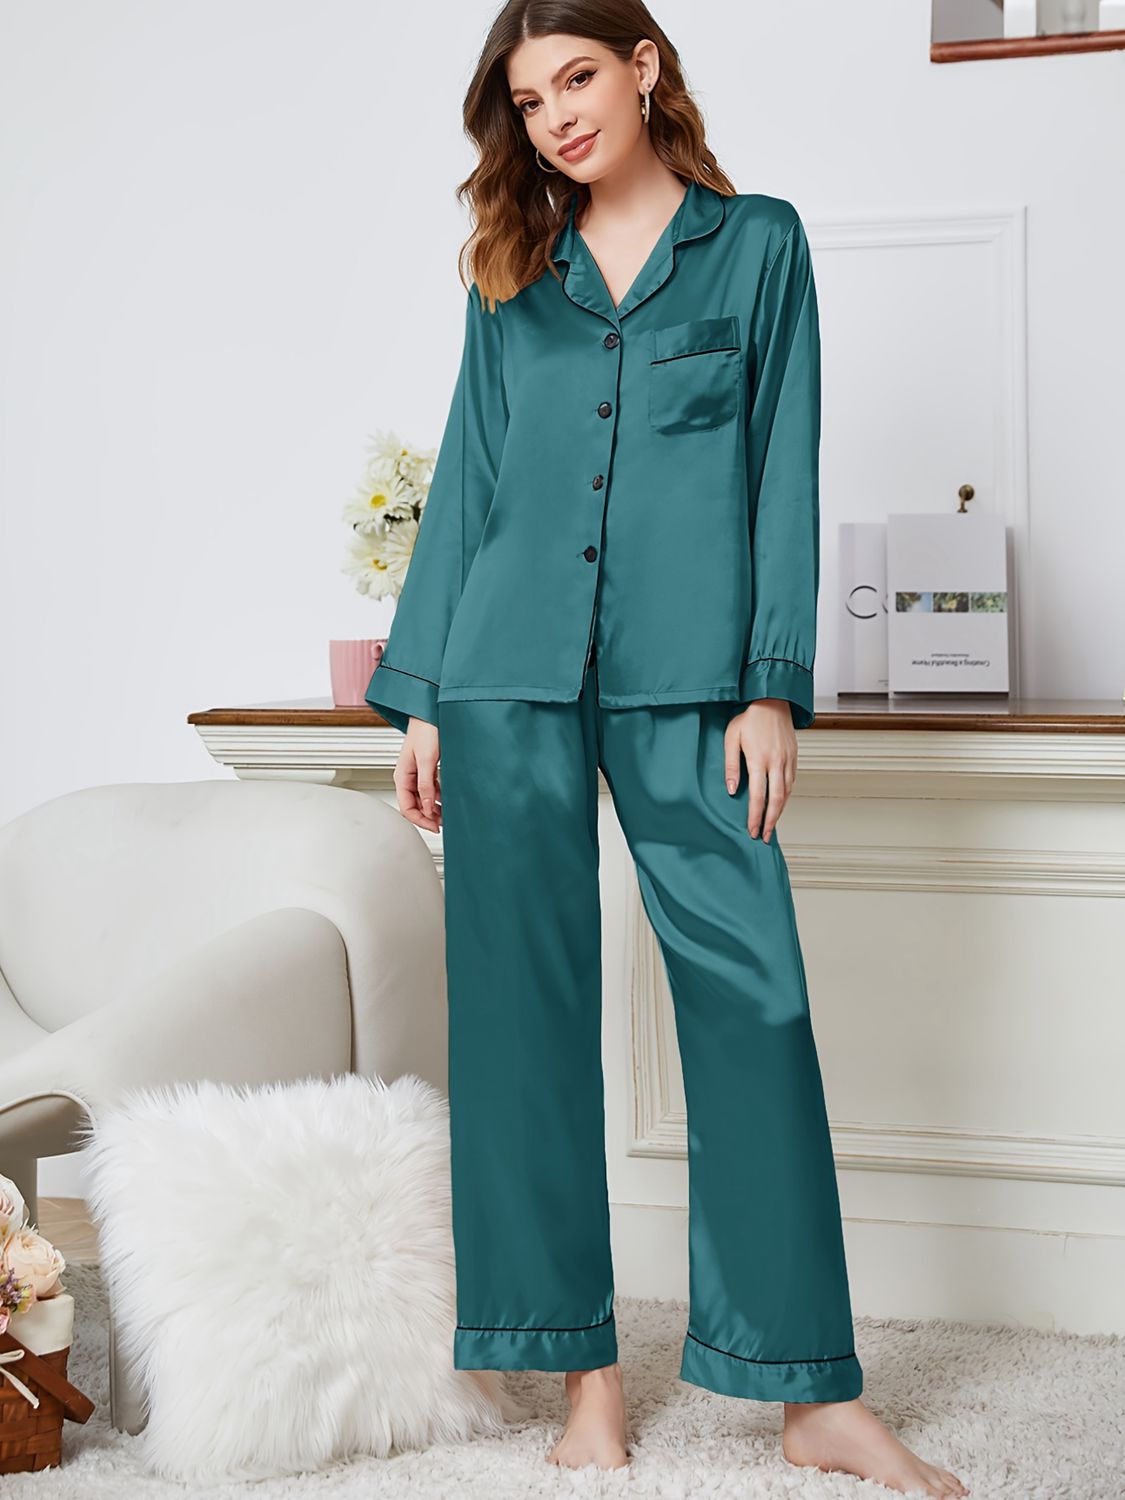 Lapel Collar Long Sleeve Top and Pants Pajama Set